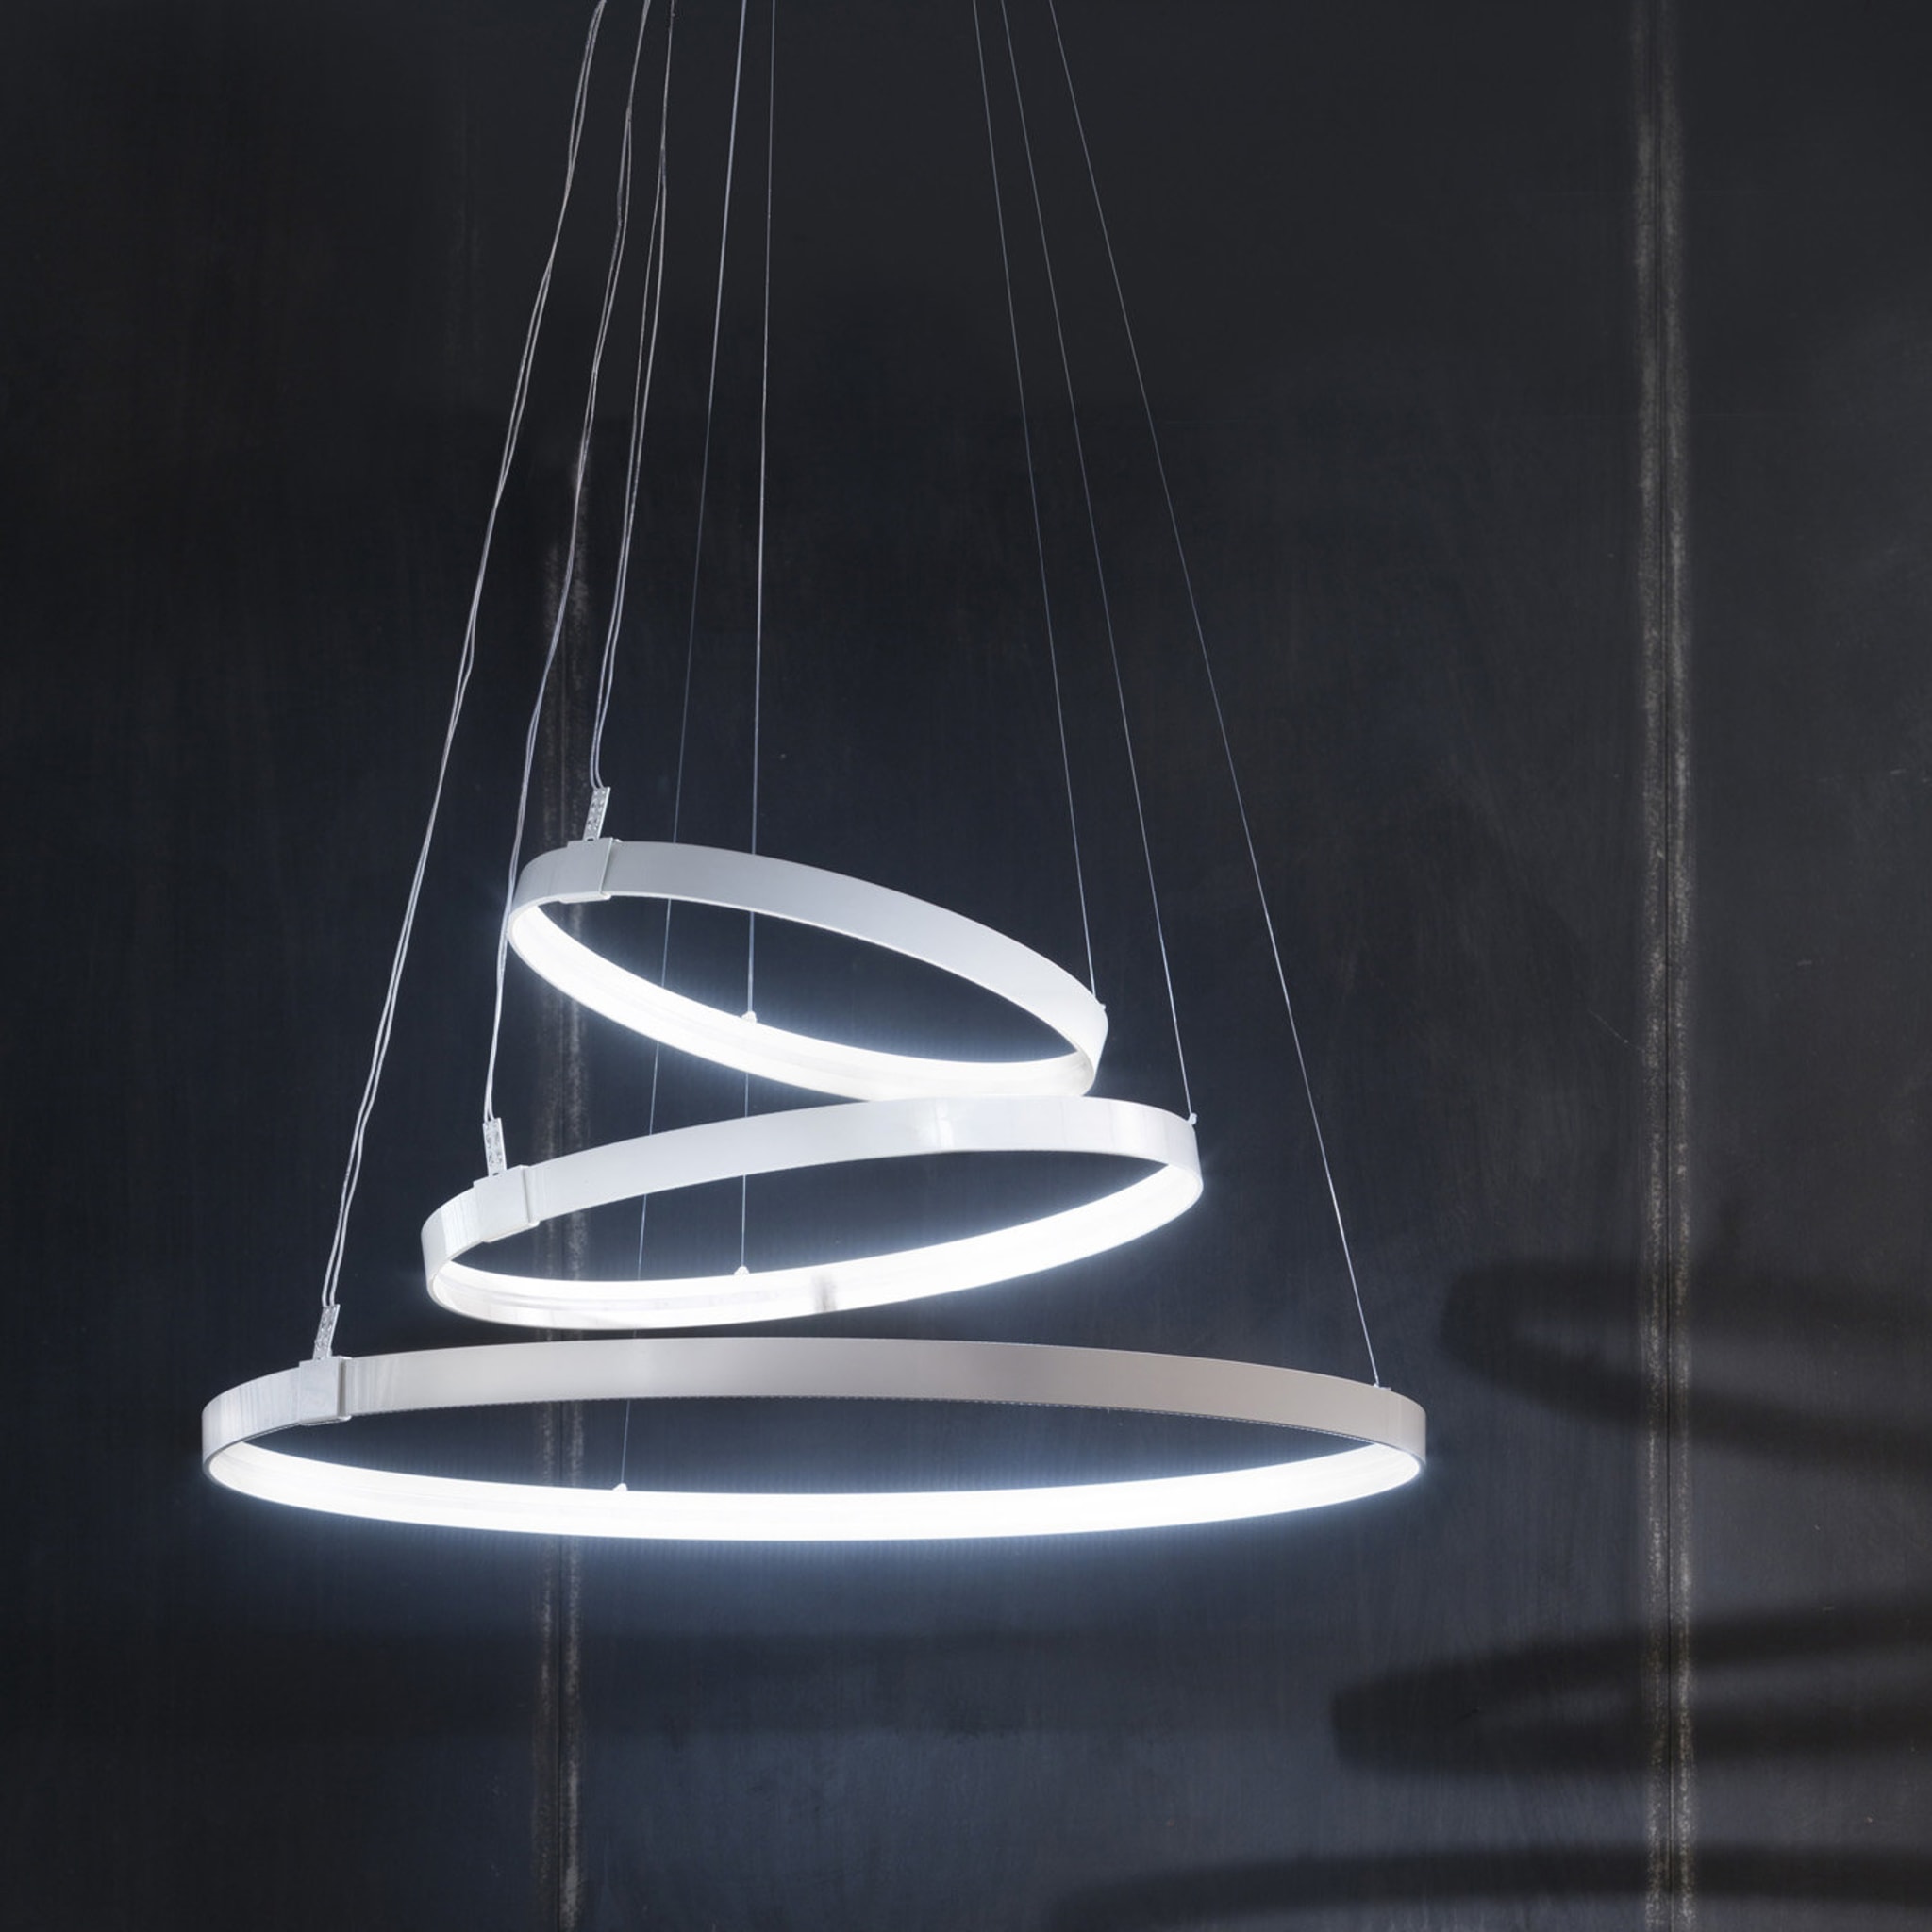 Rings Orizzontale White Pendant Lamp by Valerio Cometti - V12 Design - Alternative view 2